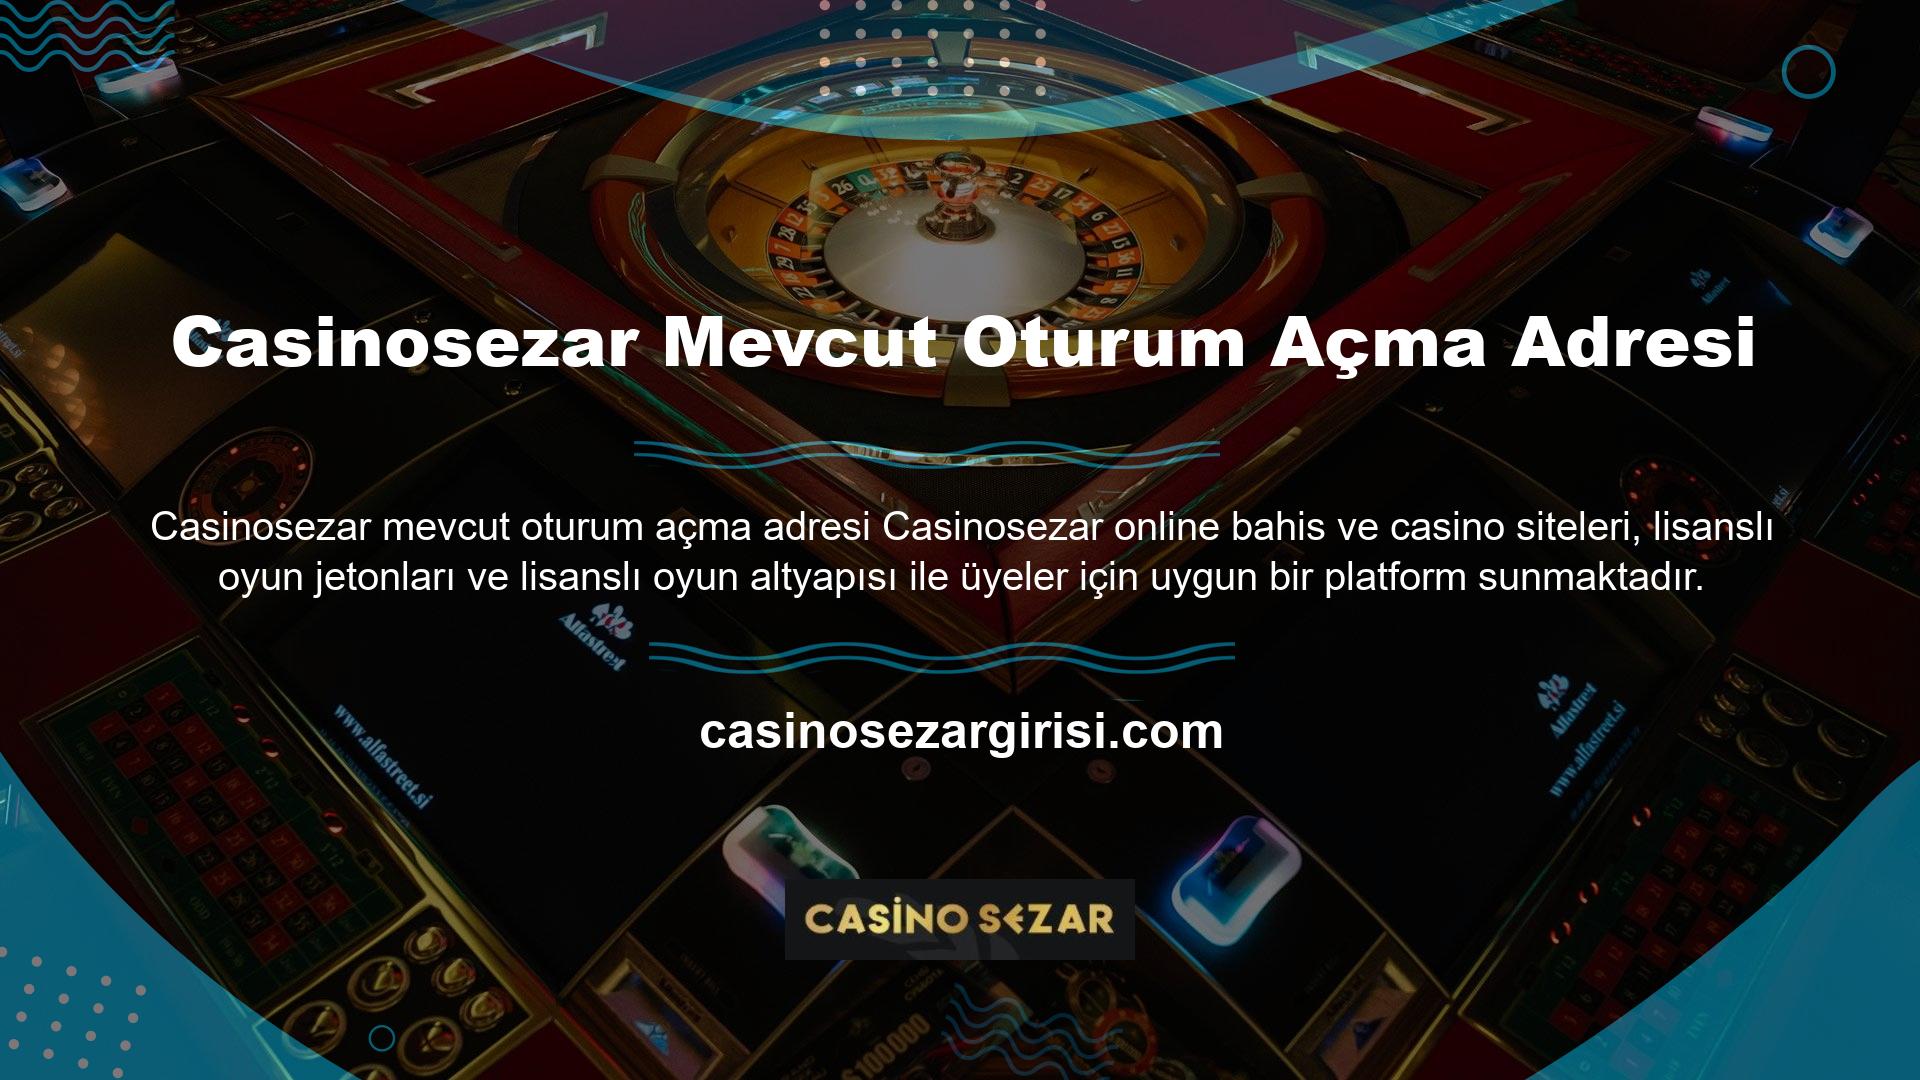 Ancak tüm online casino siteleri gibi bu sitelerin de lisansları ülkemizde geçerli olmadığı için Casinosezar erişim yasaktır